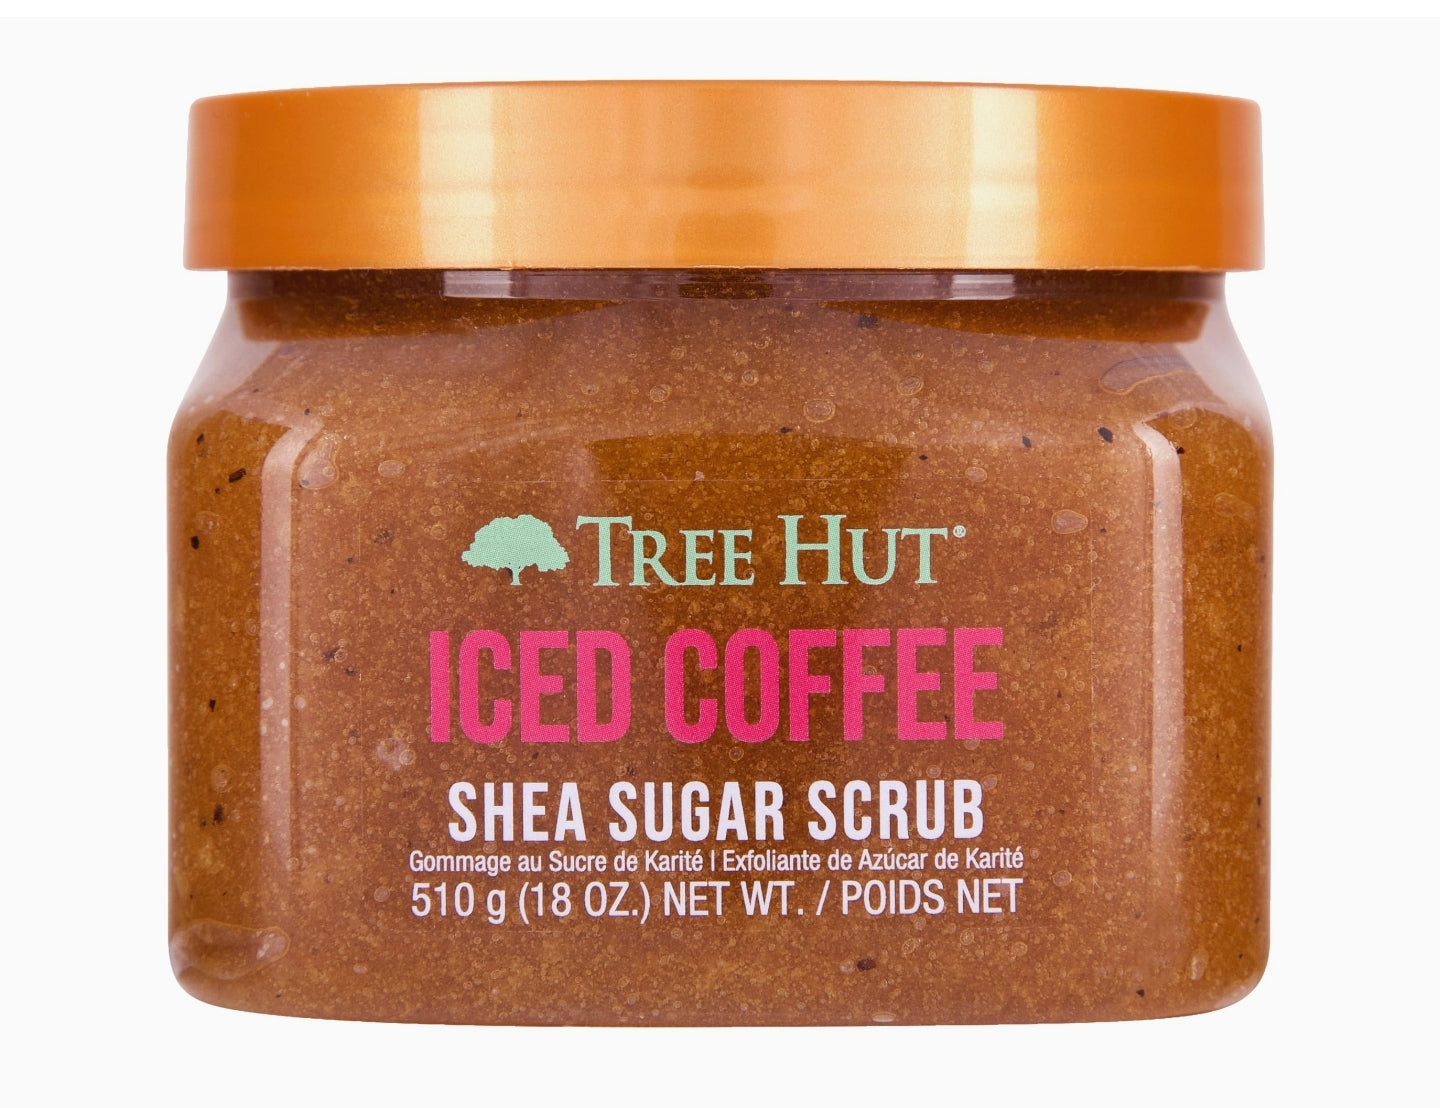 Tree Hut Iced Coffee Shea Sugar Exfoliating & Hydrating Body Scrub, 18 oz